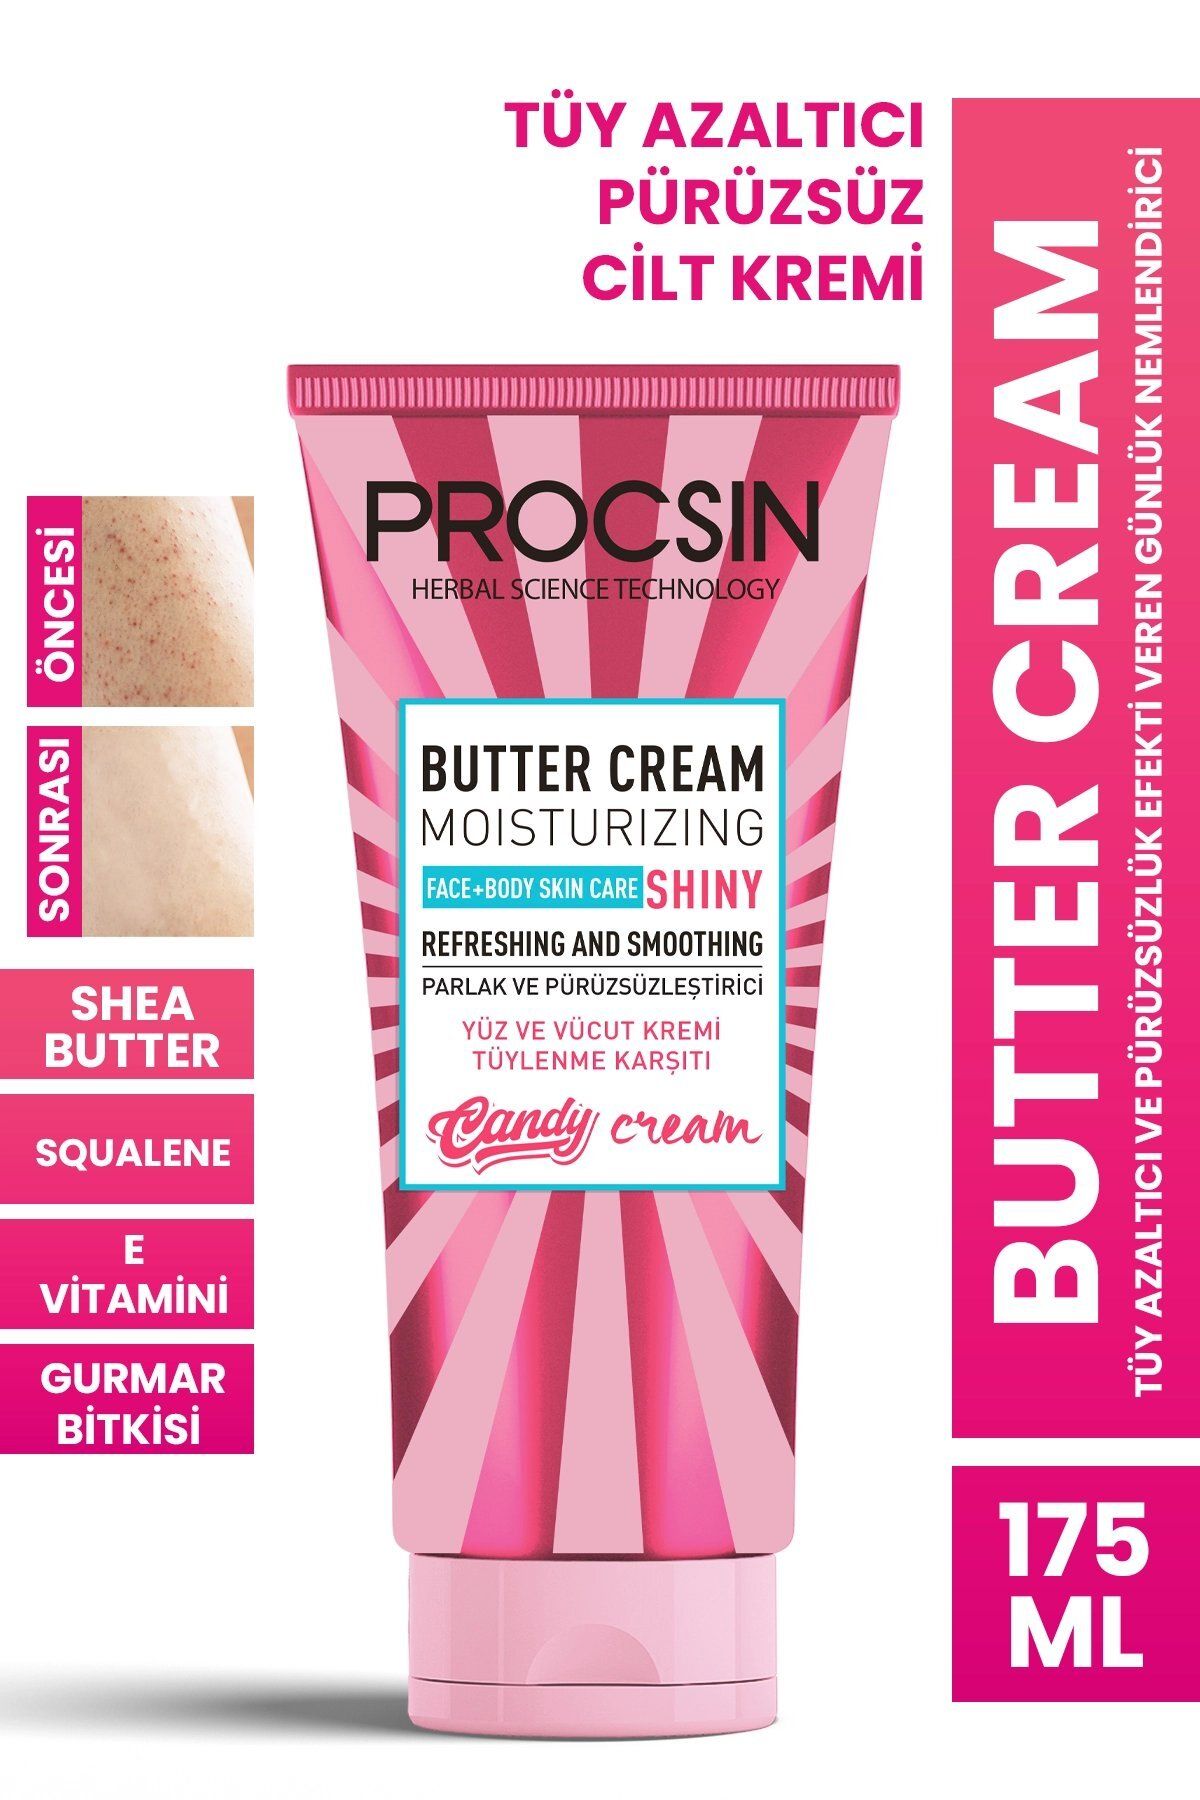 PROCSIN Butter Cream Tüy Azaltıcı Ve Pürüzsüzlük Efekti Veren Günlük Nemlendirici 175 ml